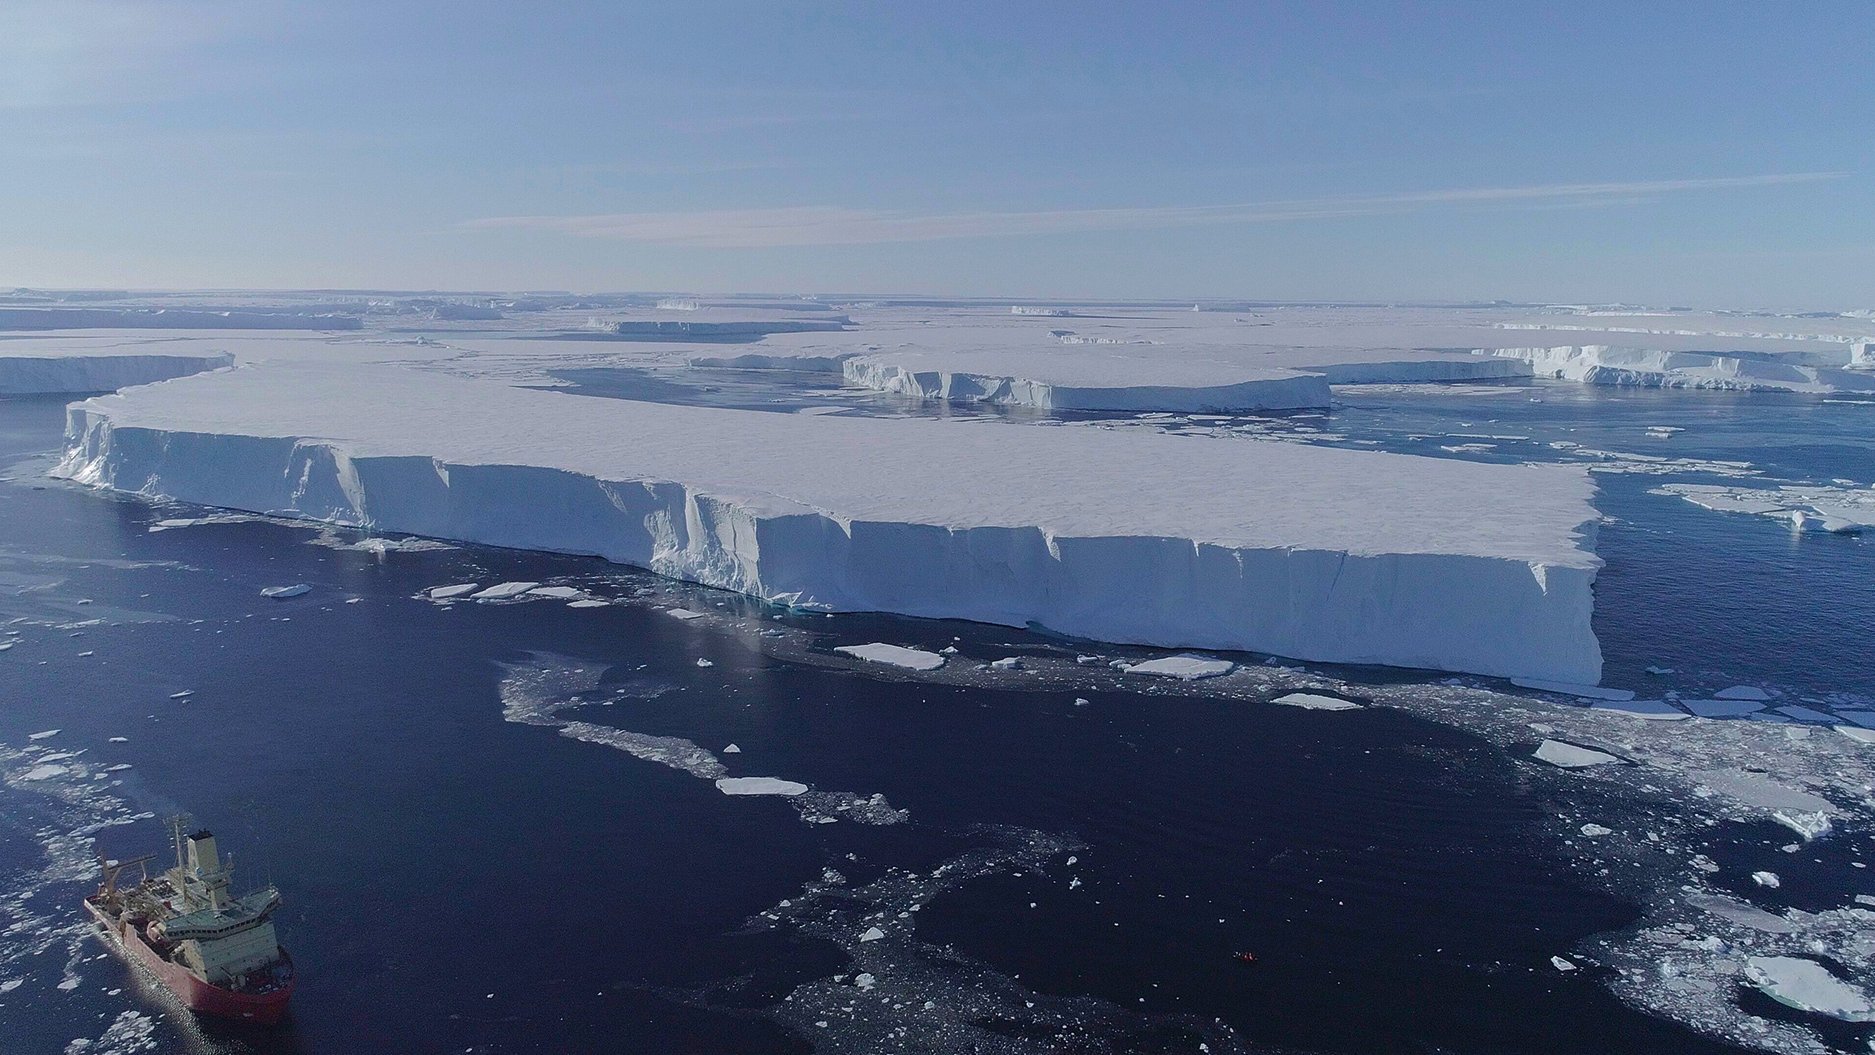 Mit dem Rückgang des Schelfeises verliert der Thwaites-Gletscher einen natürlichen Bremsklotz; immer schneller gleitet er ins Meer. Sein Schwin- den droht zu einem Kollaps des gesamten westantarktischen Eisschildes zu führen.